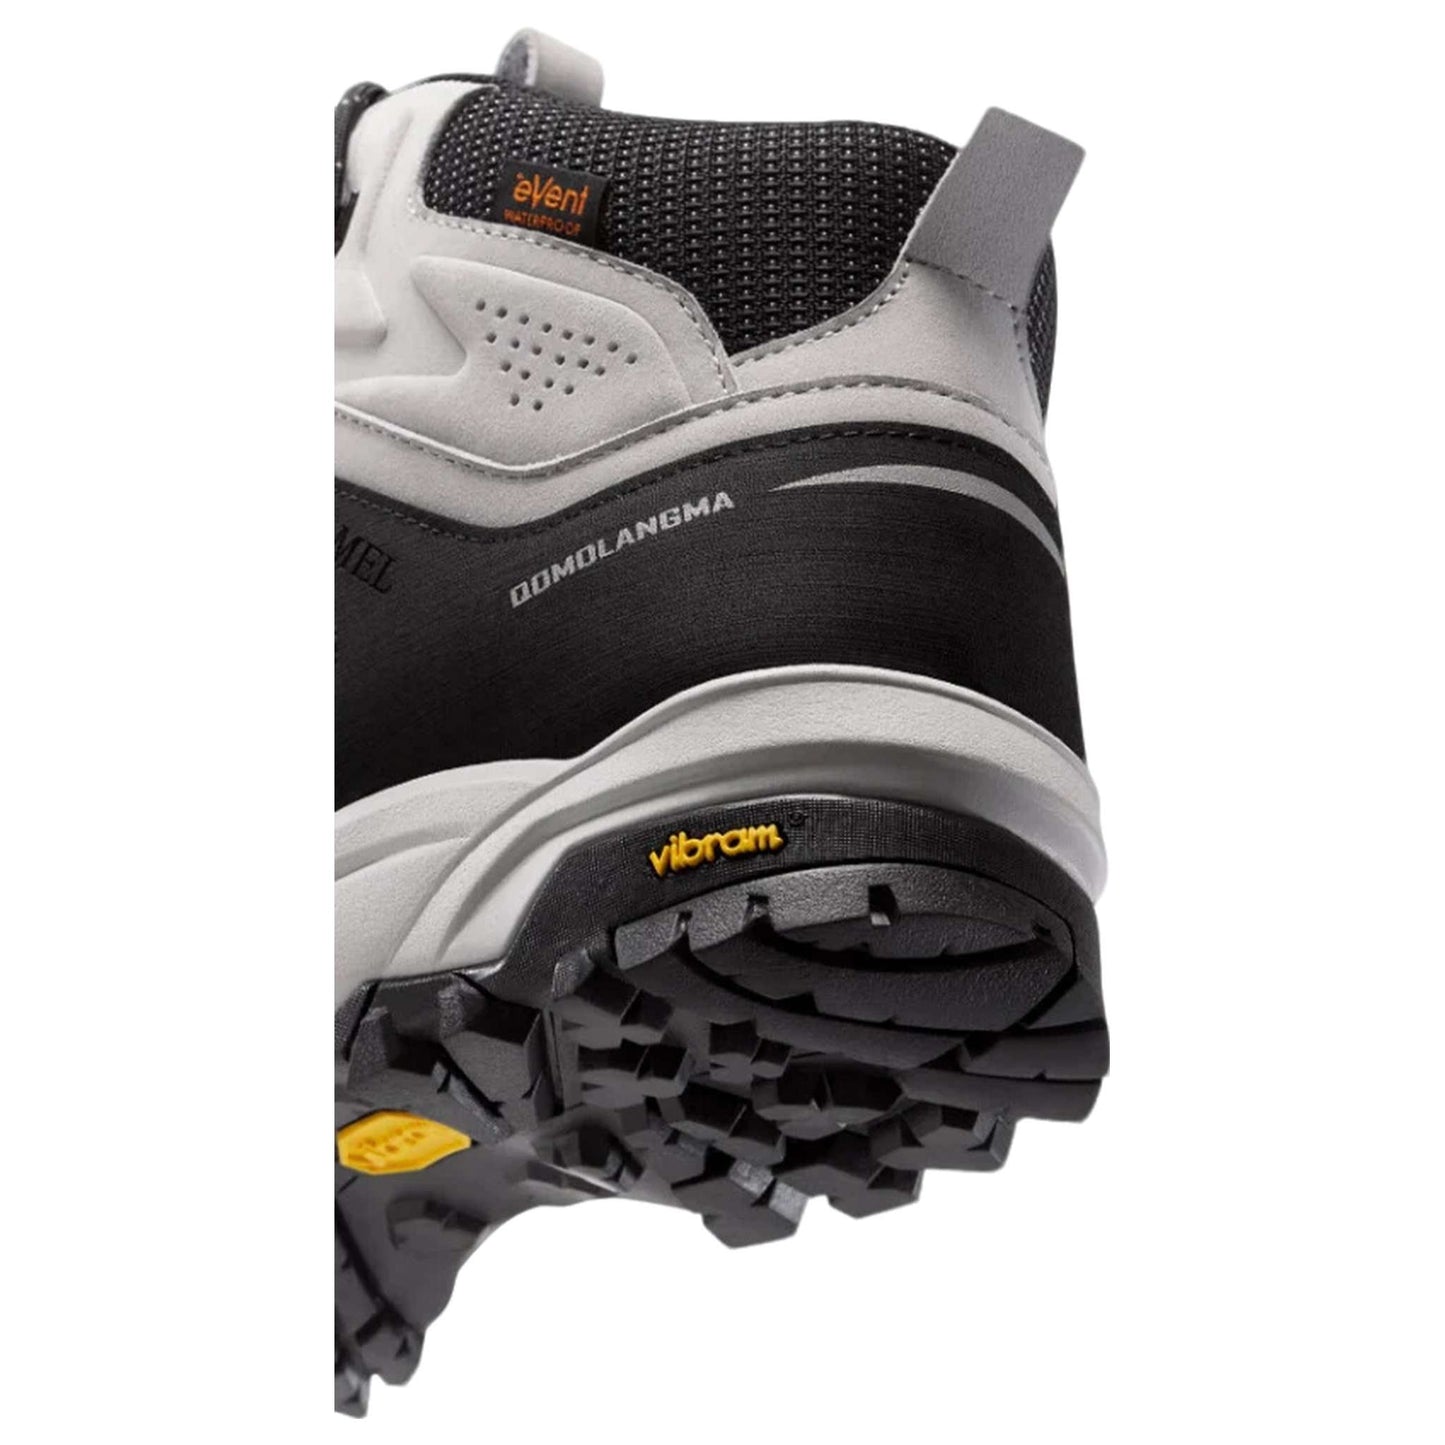 Outdoor Hiking Men's Boots – eVent Waterproof High-Top Trekking Footwear with Vibram Soles